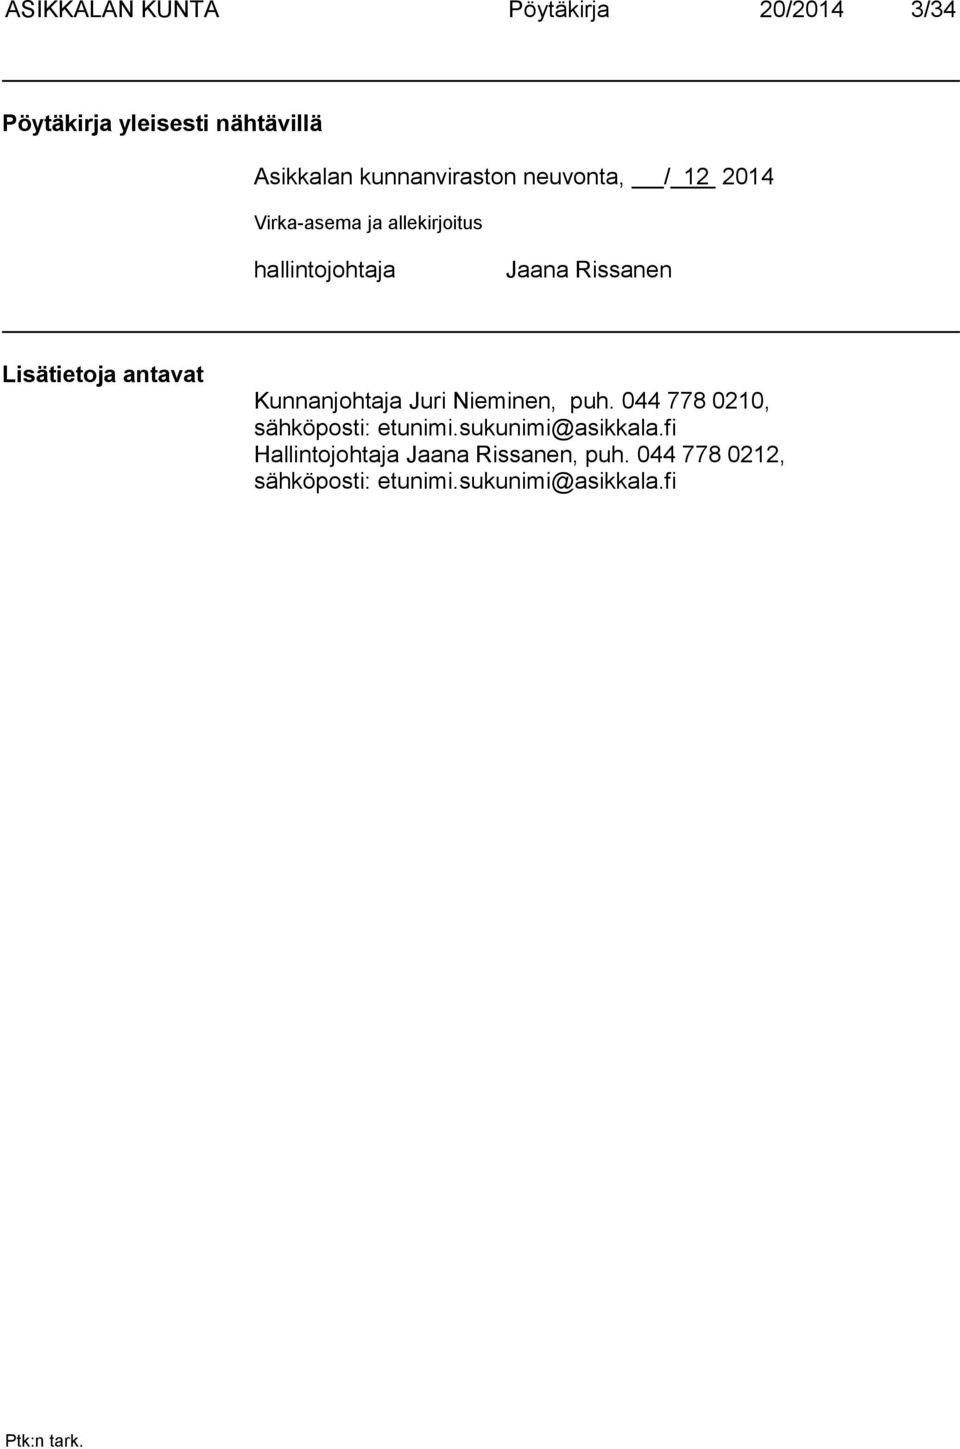 Lisätietoja antavat Kunnanjohtaja Juri Nieminen, puh. 044 778 0210, sähköposti: etunimi.